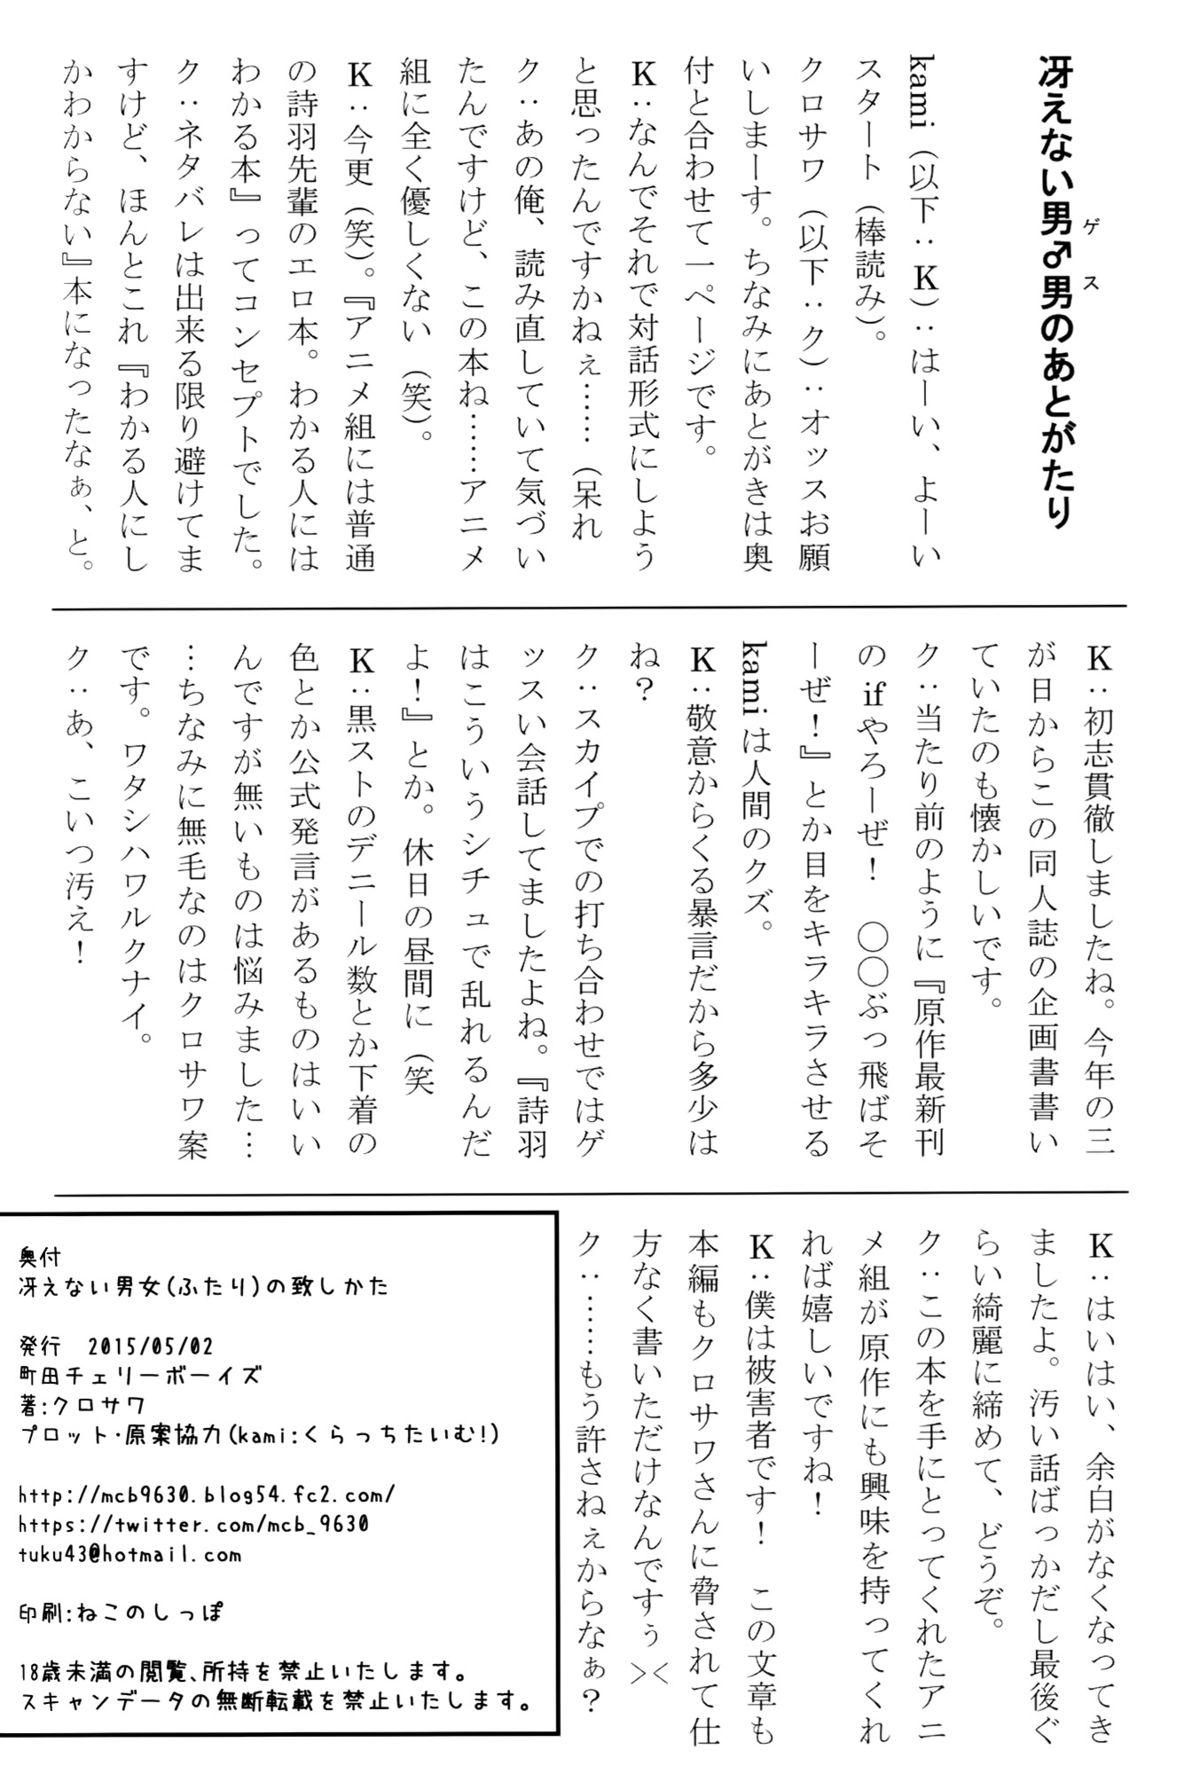 Hardcore Free Porn Saenai Futari no Itashikata - Saenai heroine no sodatekata Gozando - Page 37